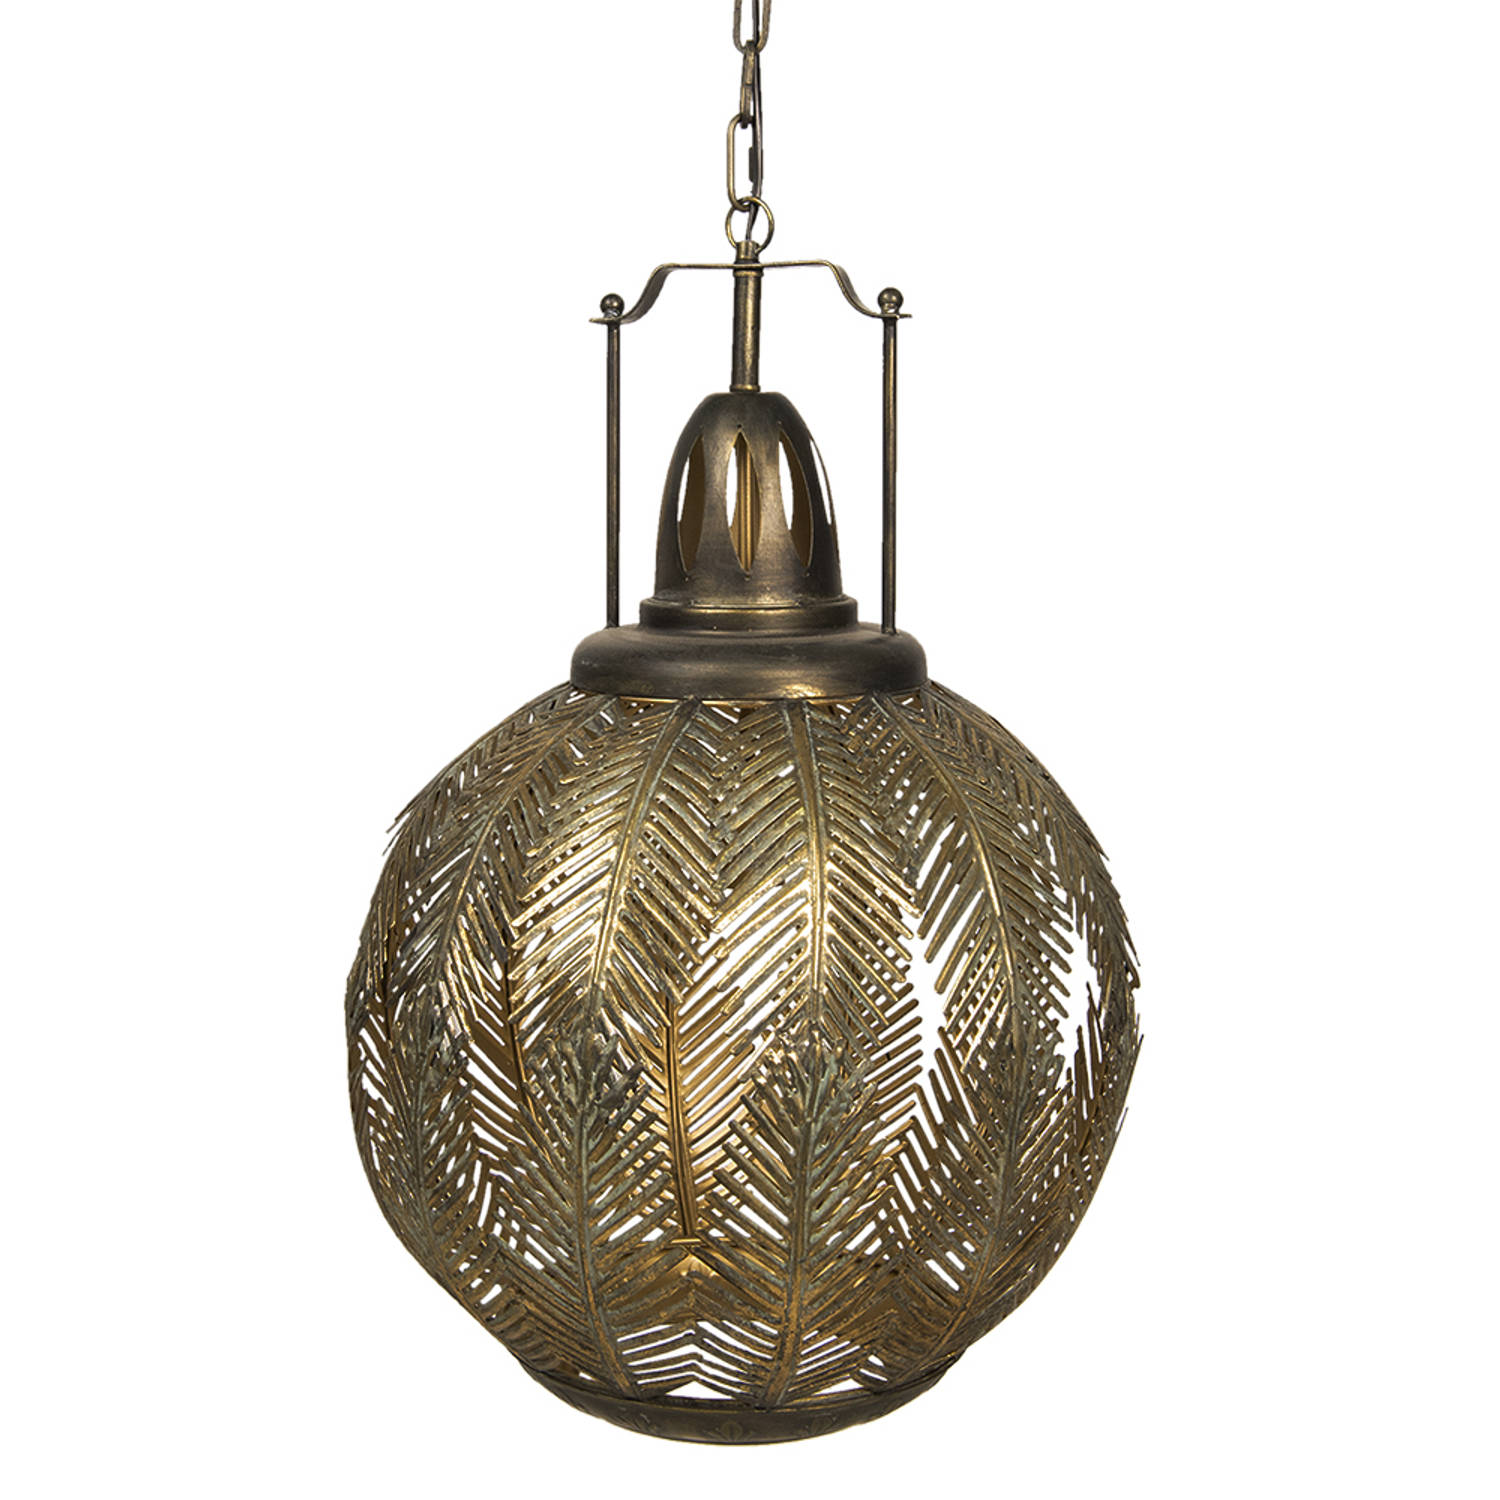 HAES DECO - Hanglamp - City Jungle - Botanische / Bladeren Lamp, formaat 45x45x70 cm - Goudkleurig Metaal - Ronde Hanglamp Eettafel, Hanglamp Eetkamer